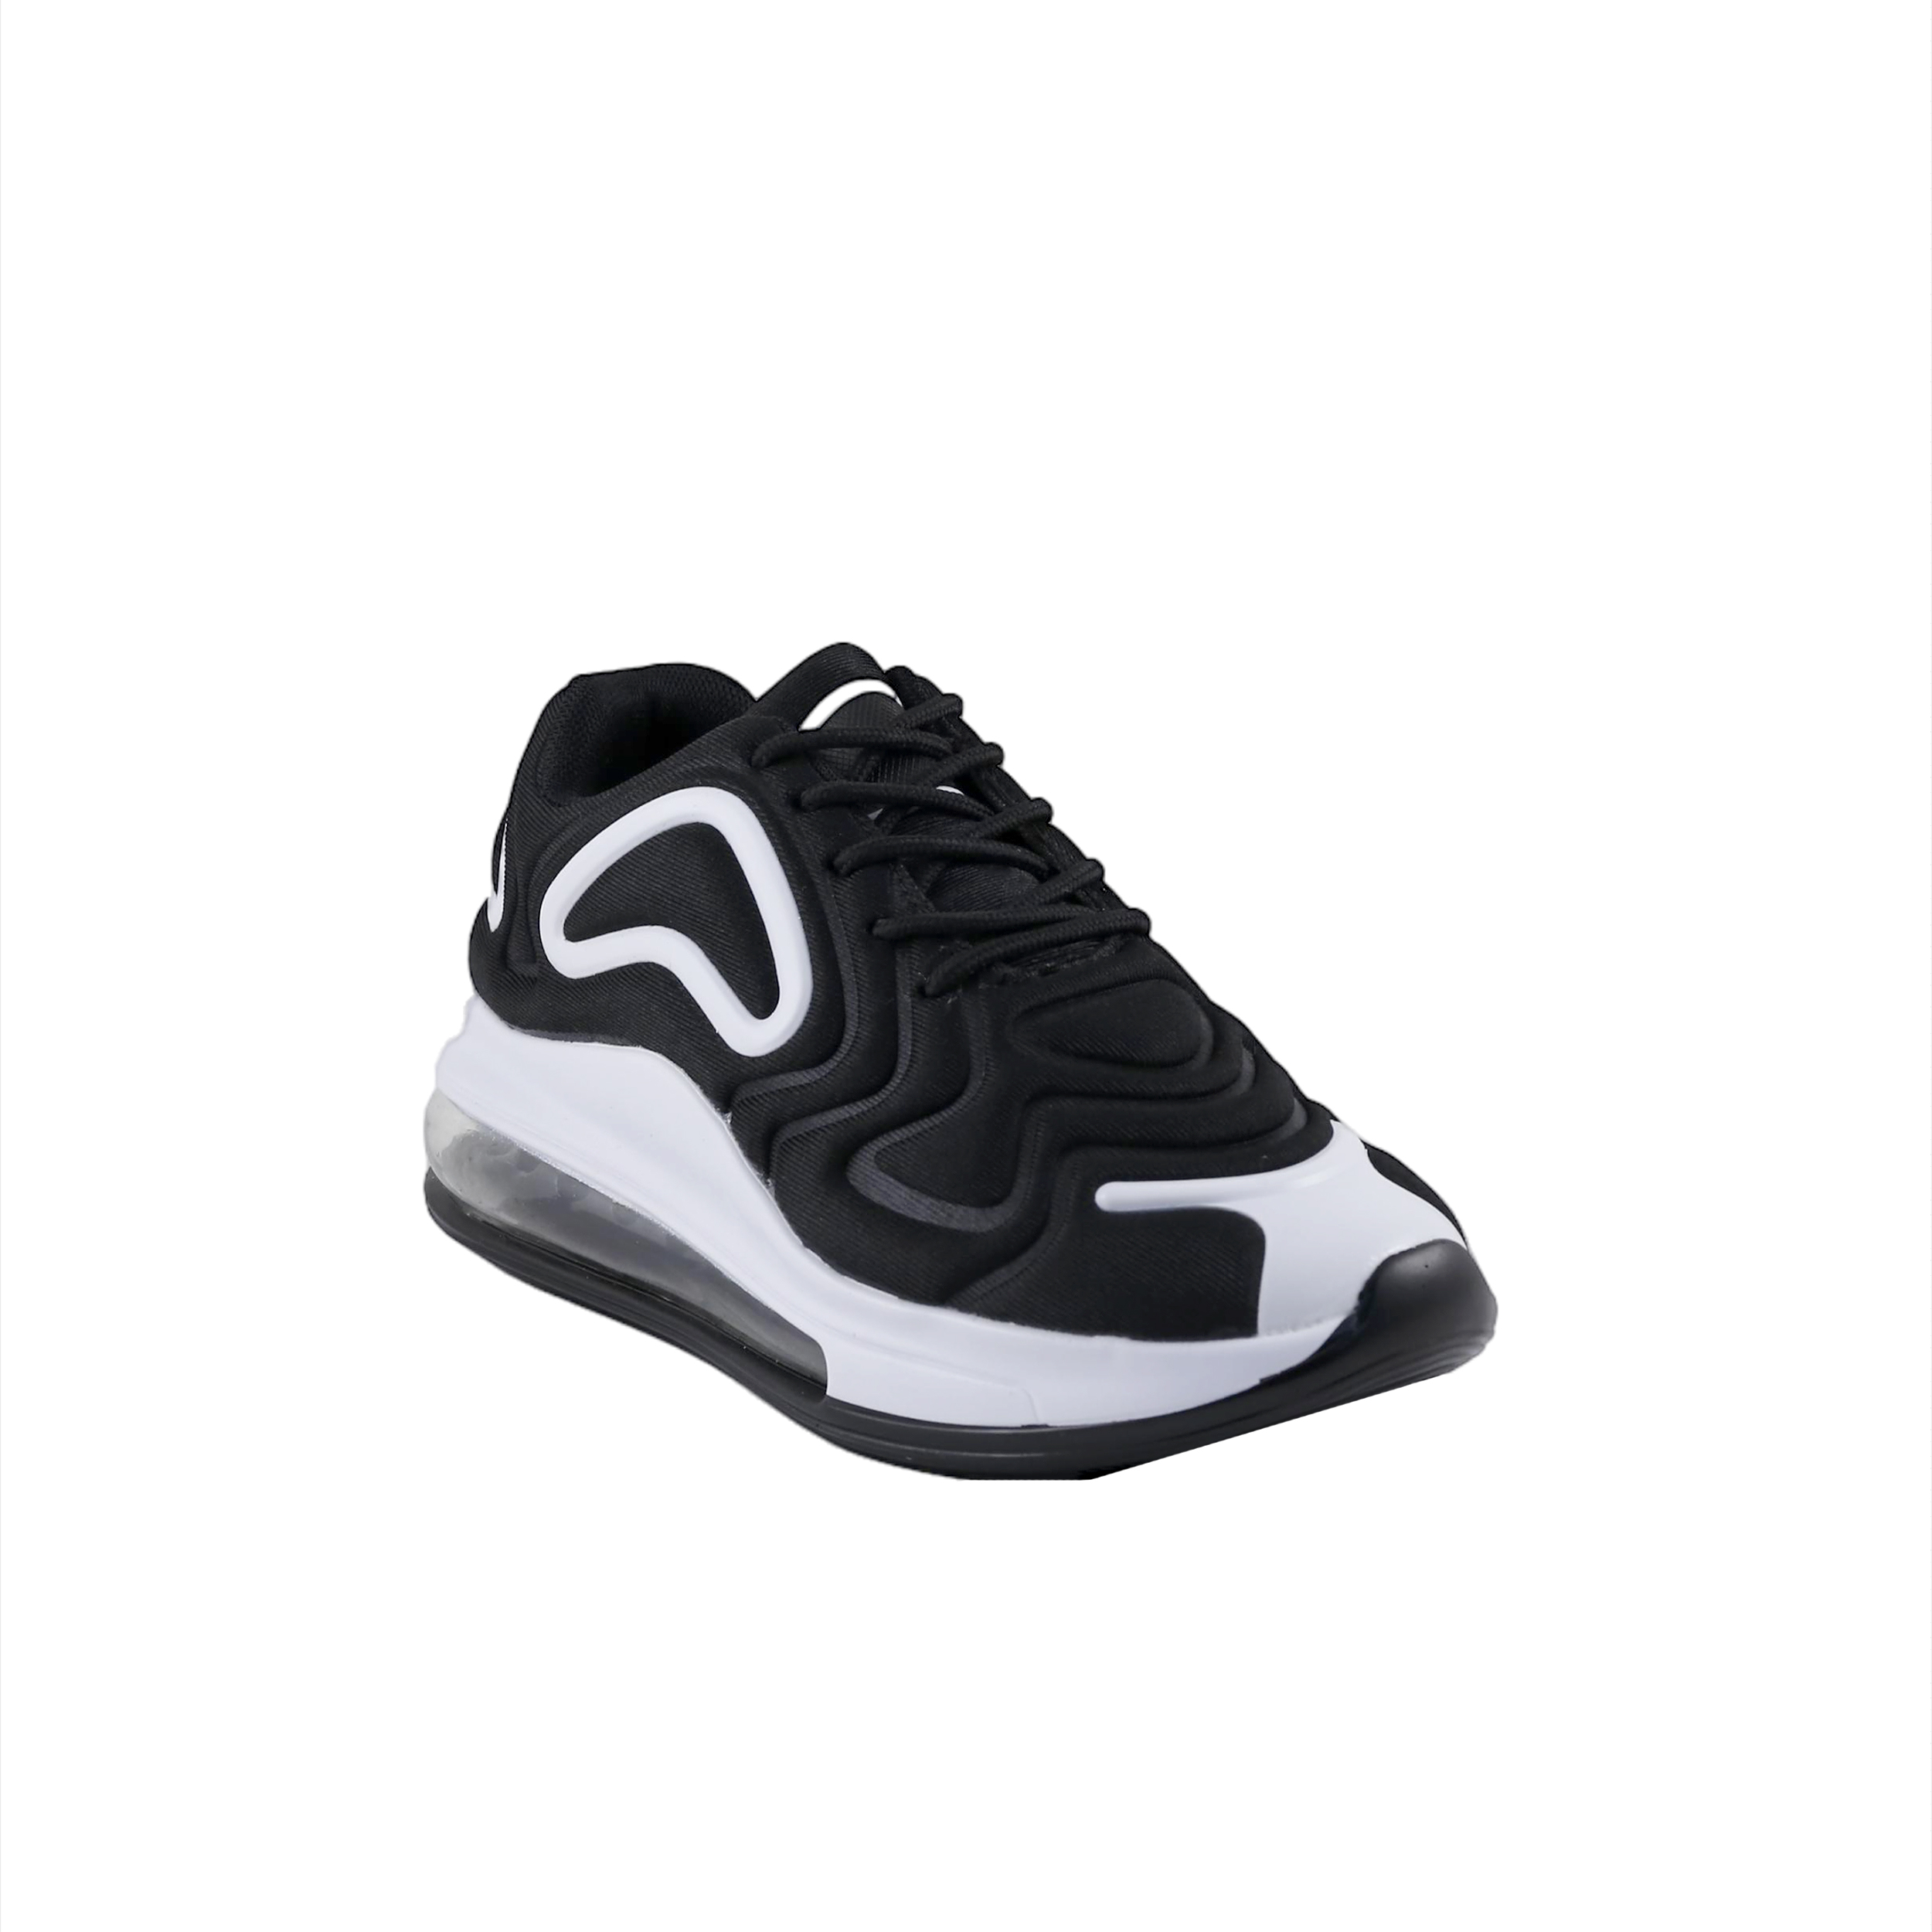 Άνδρας Παπούτσια Casual-Sneakers Μαύρα-Άσπρα casual sneakers